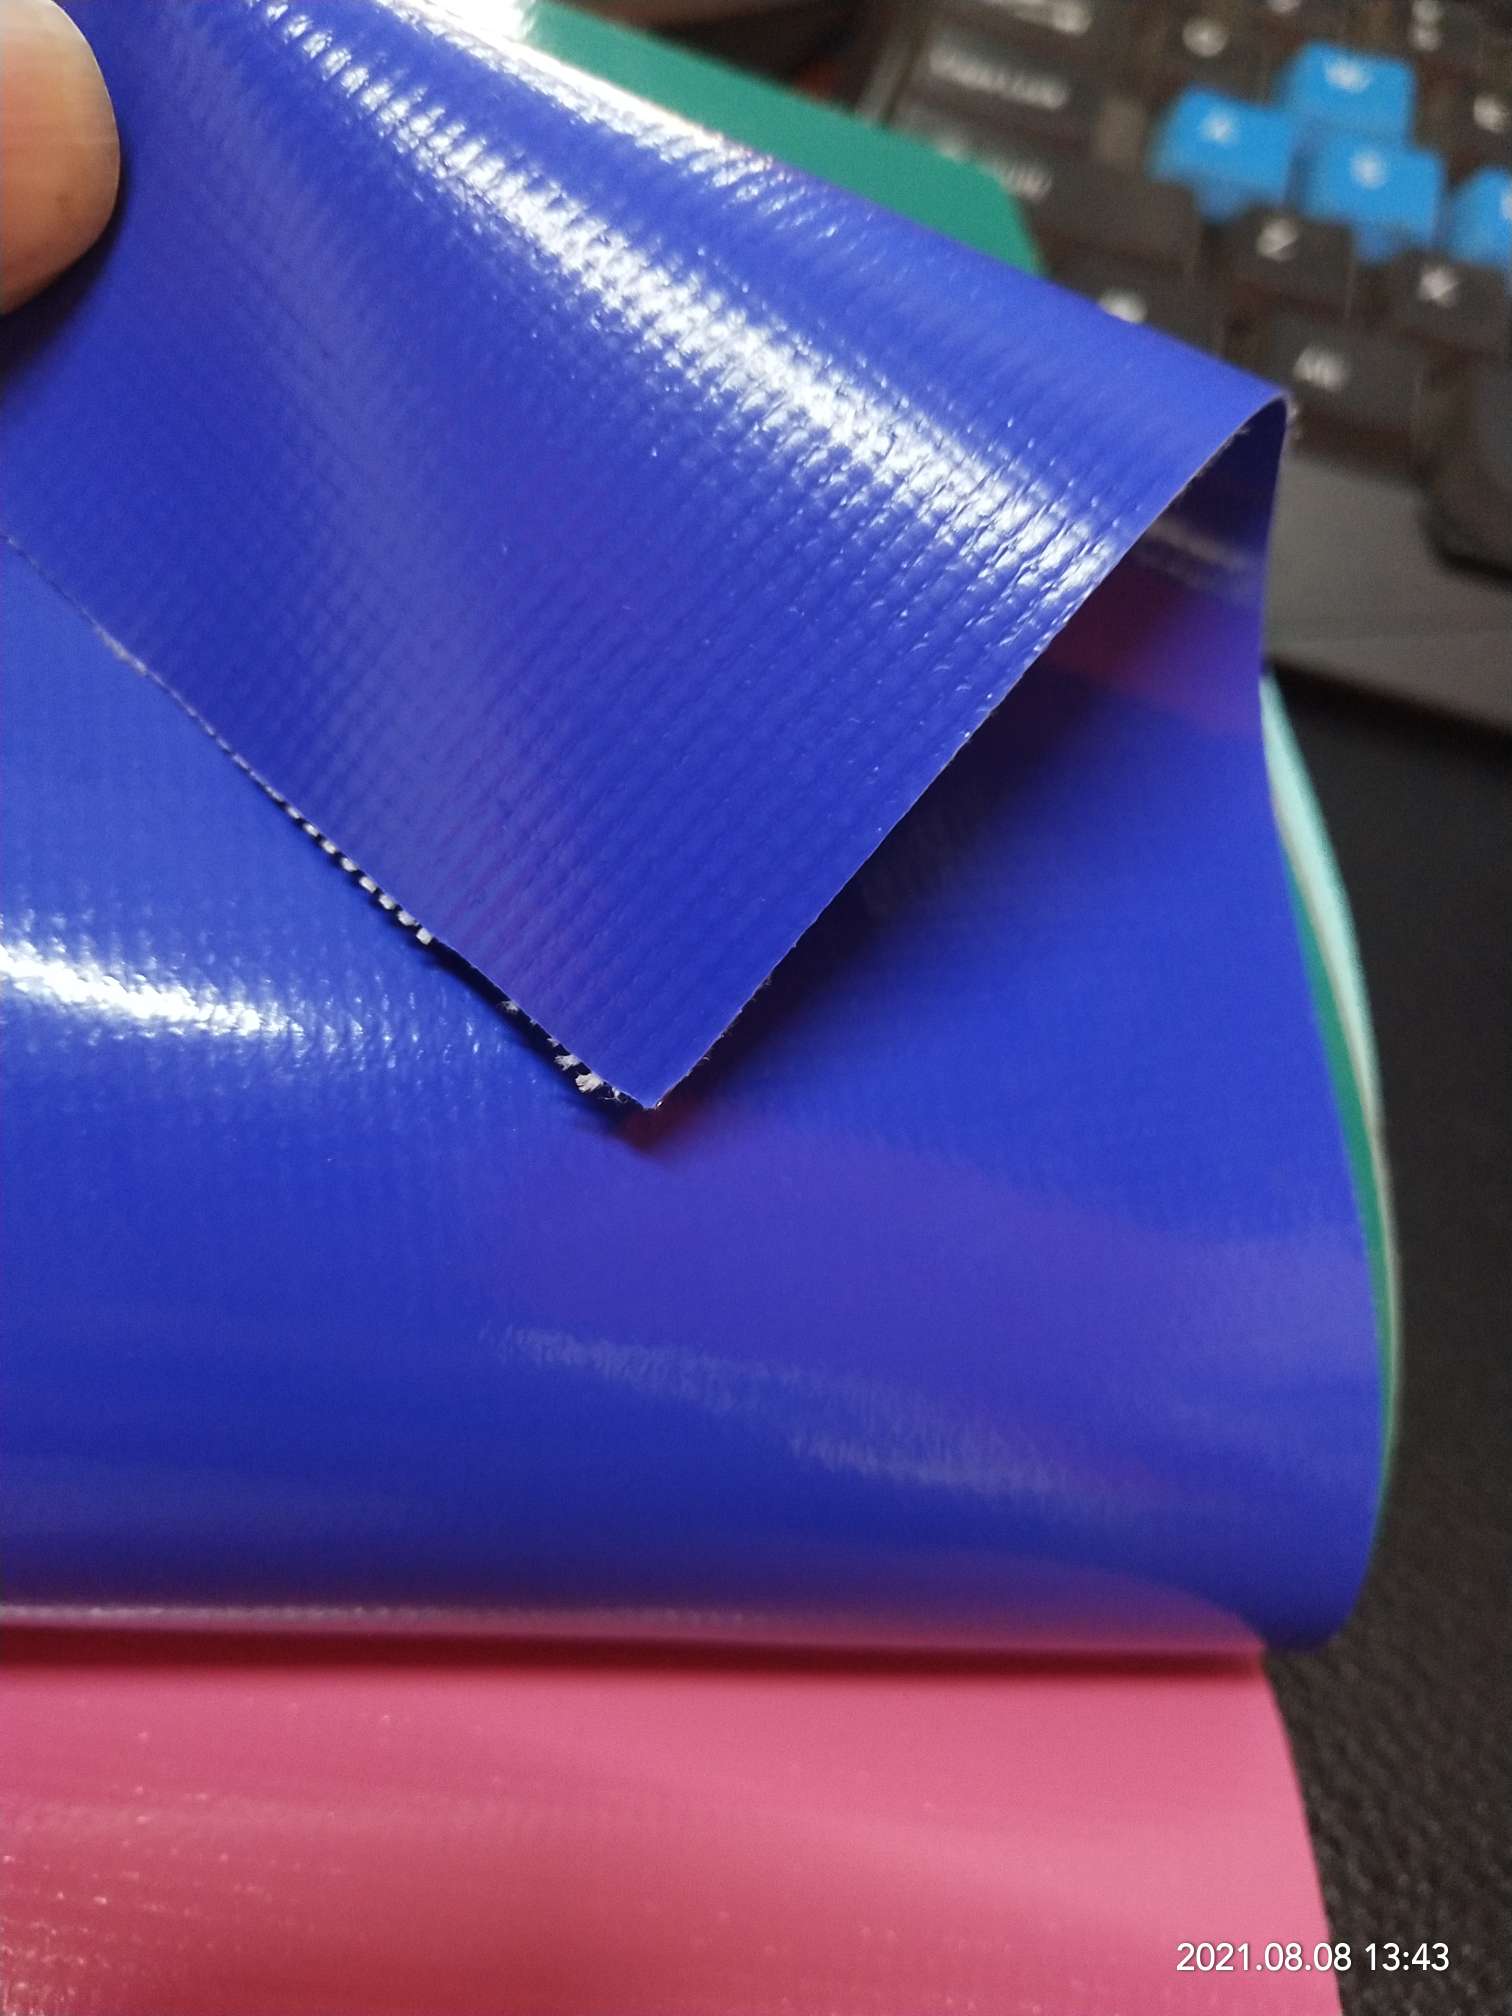 优质光面0.47mm厚深蓝色PVC夹网布  箱包布  机器罩家具罩  体育游乐产品  格种箱包袋专用面料详情图3